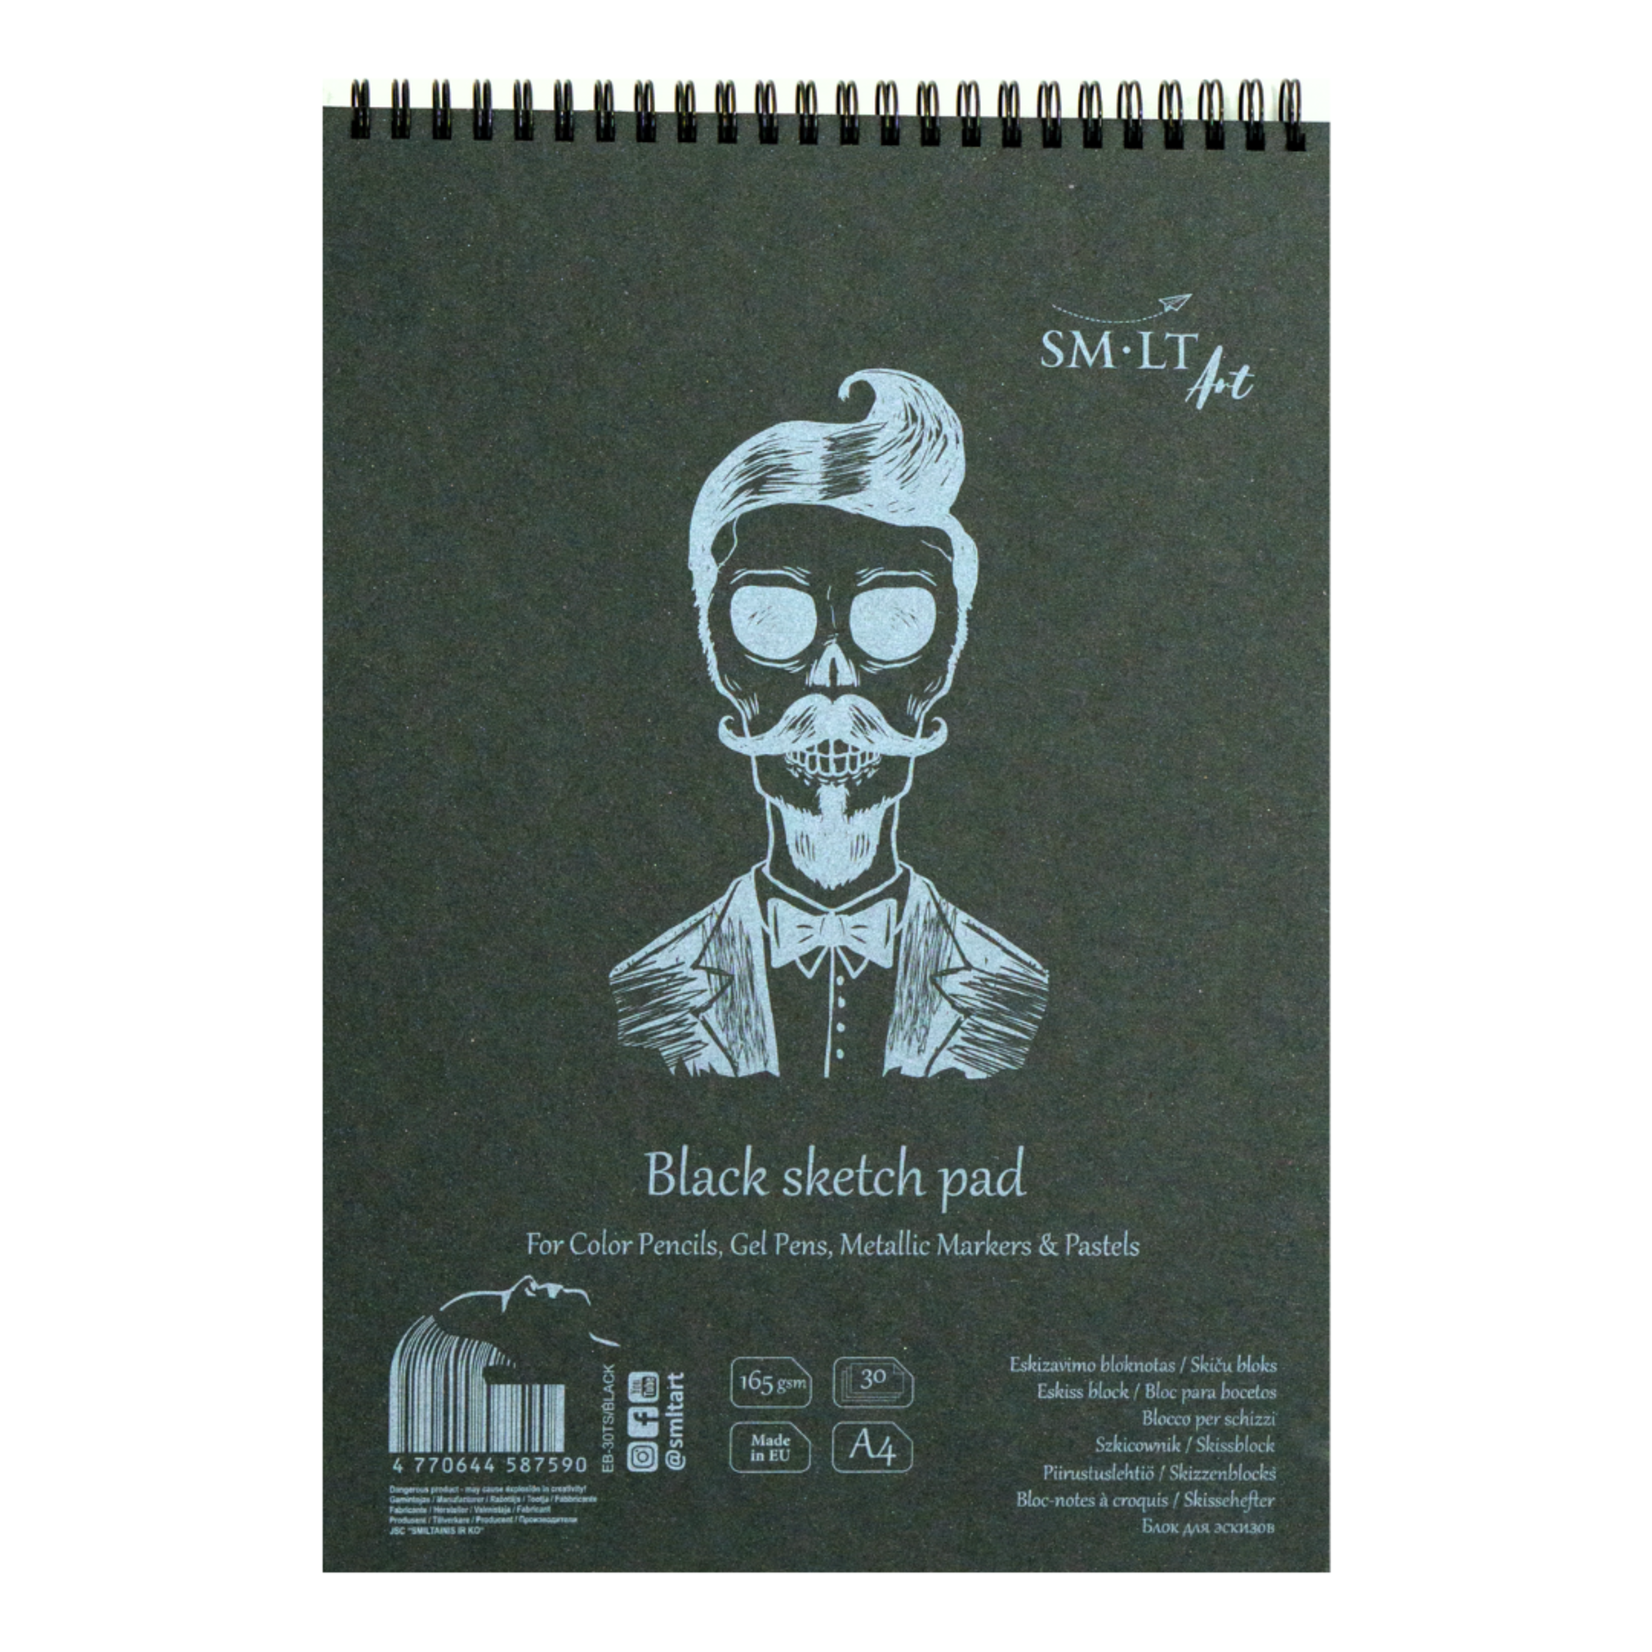 SM-LT ART AUTHENTIC SKETCH PAD COIL BOUND A4 8.5X11.75 BLACK